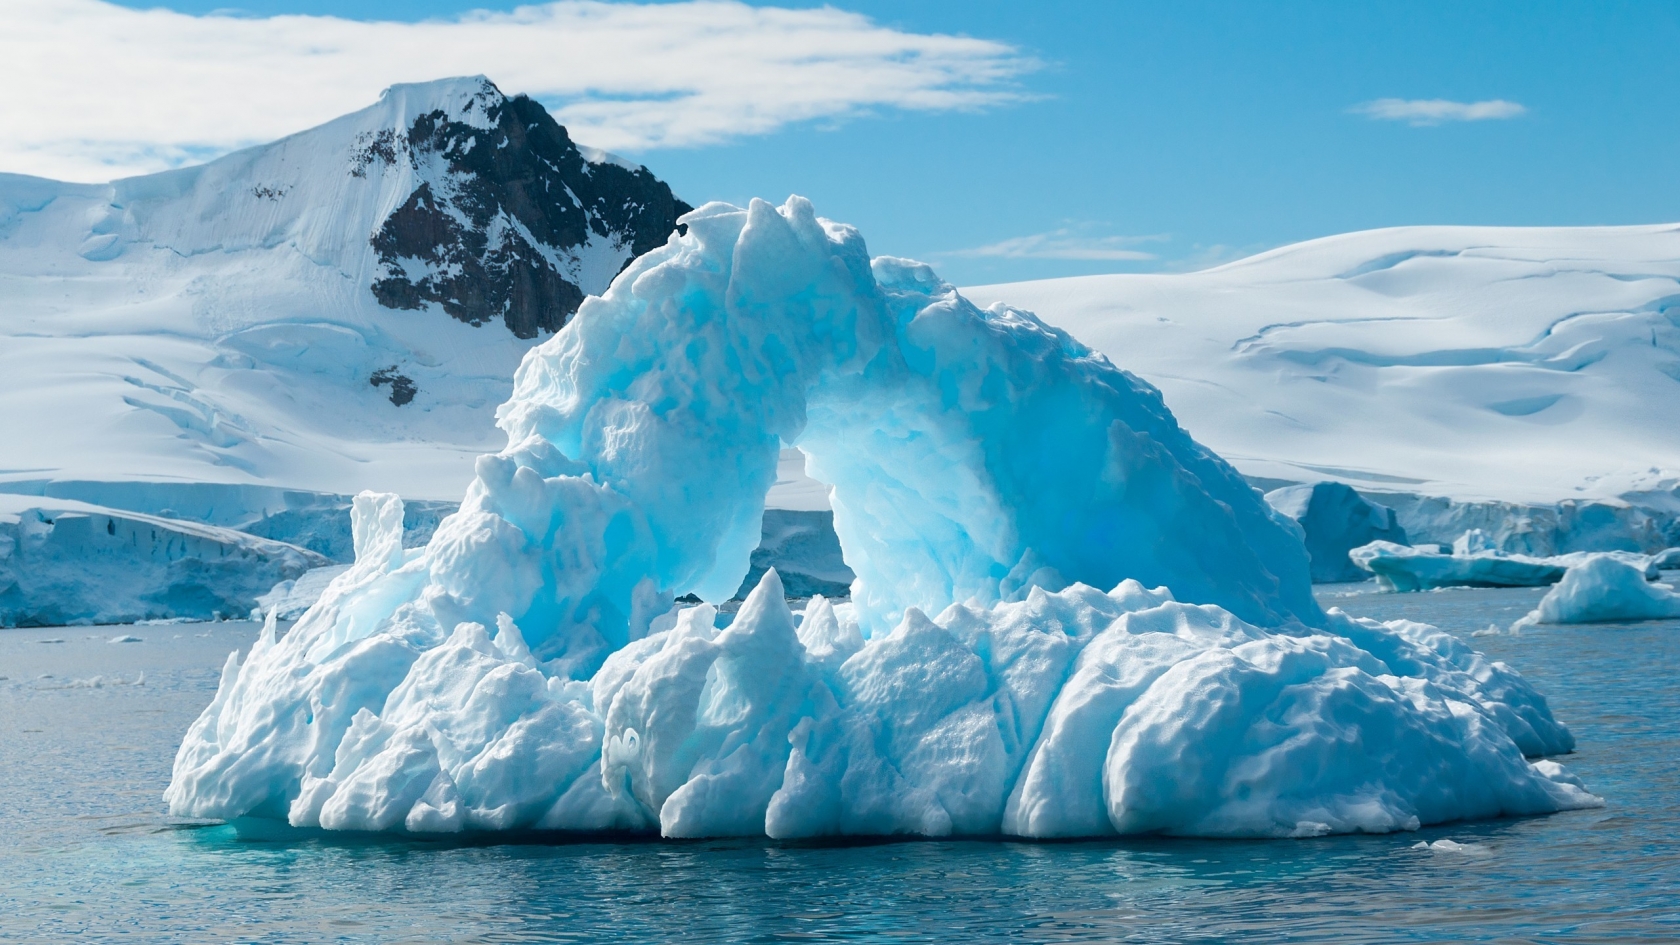 Blue Iceberg for 1680 x 945 HDTV resolution